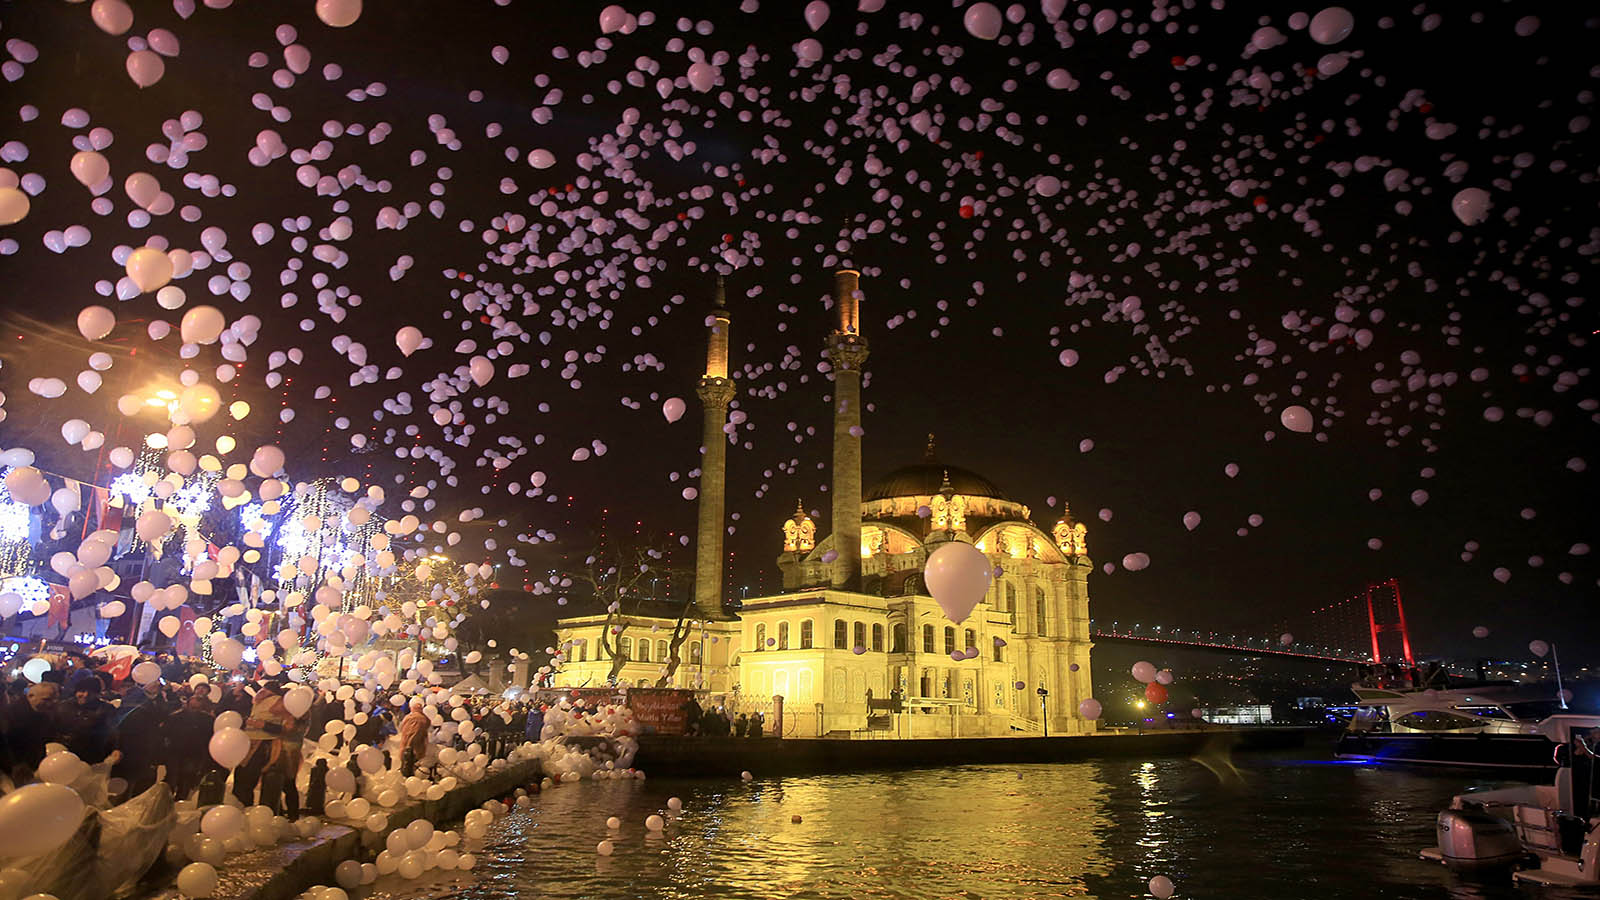 اسطنبول: نحب الحياة رغم رائحة الموت